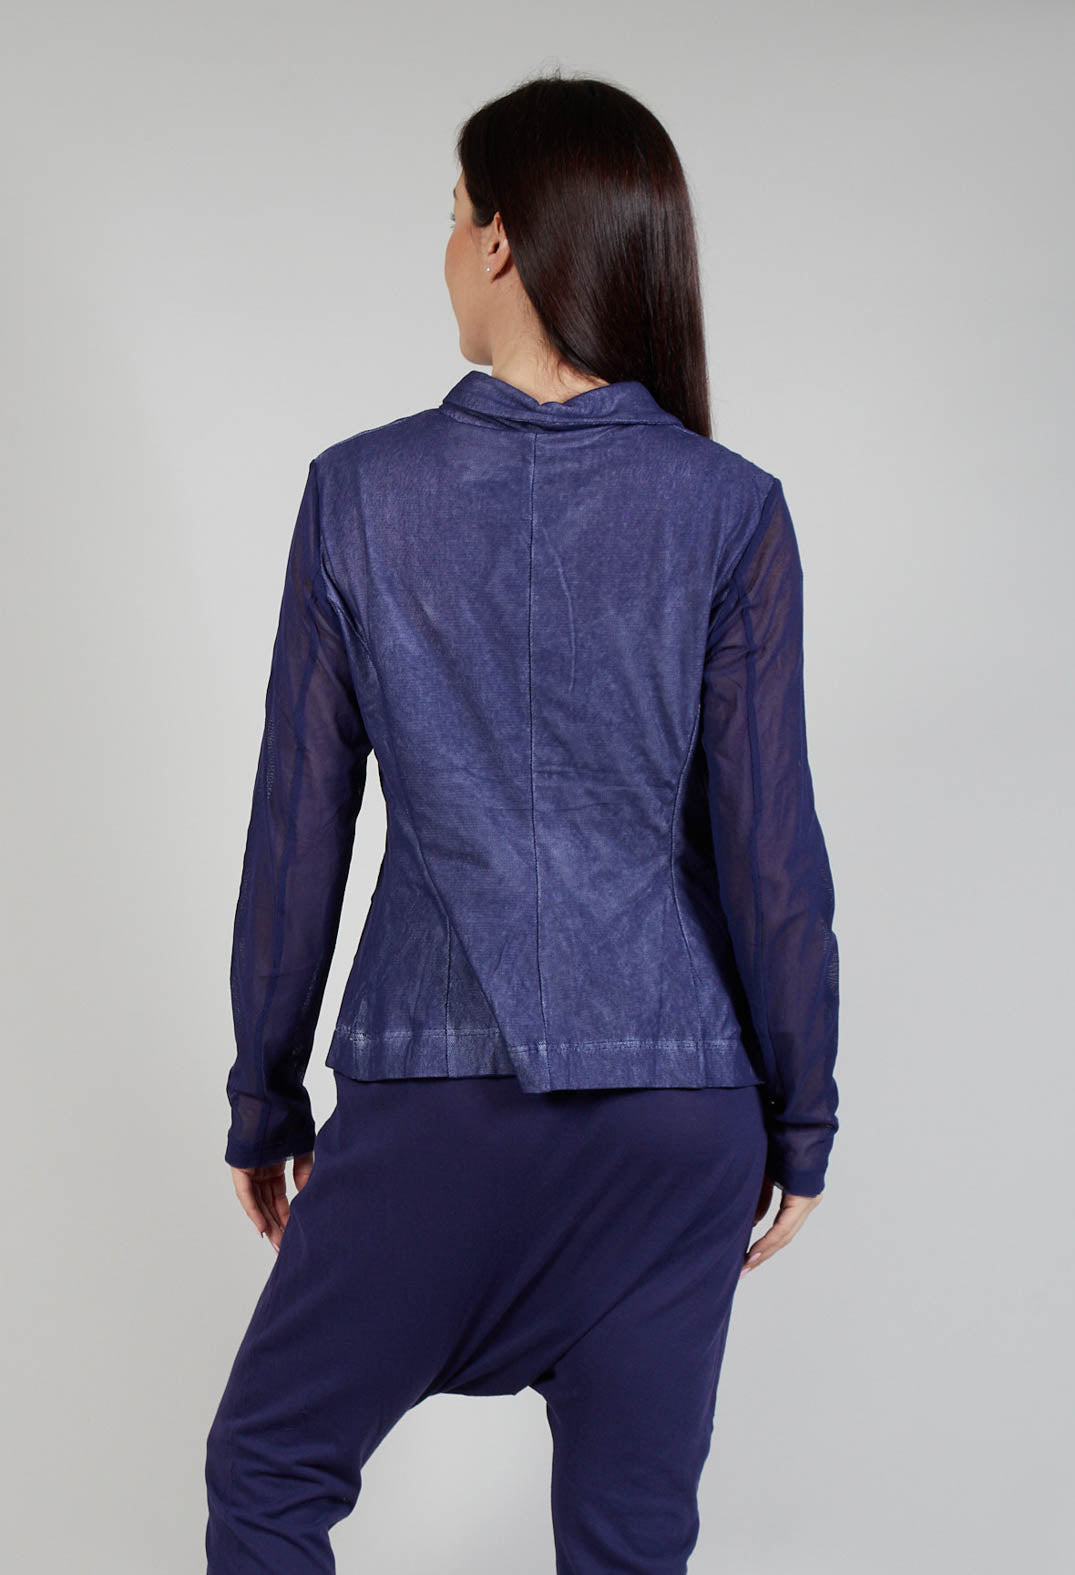 Sheer Sleeve Jacket in Azur Print